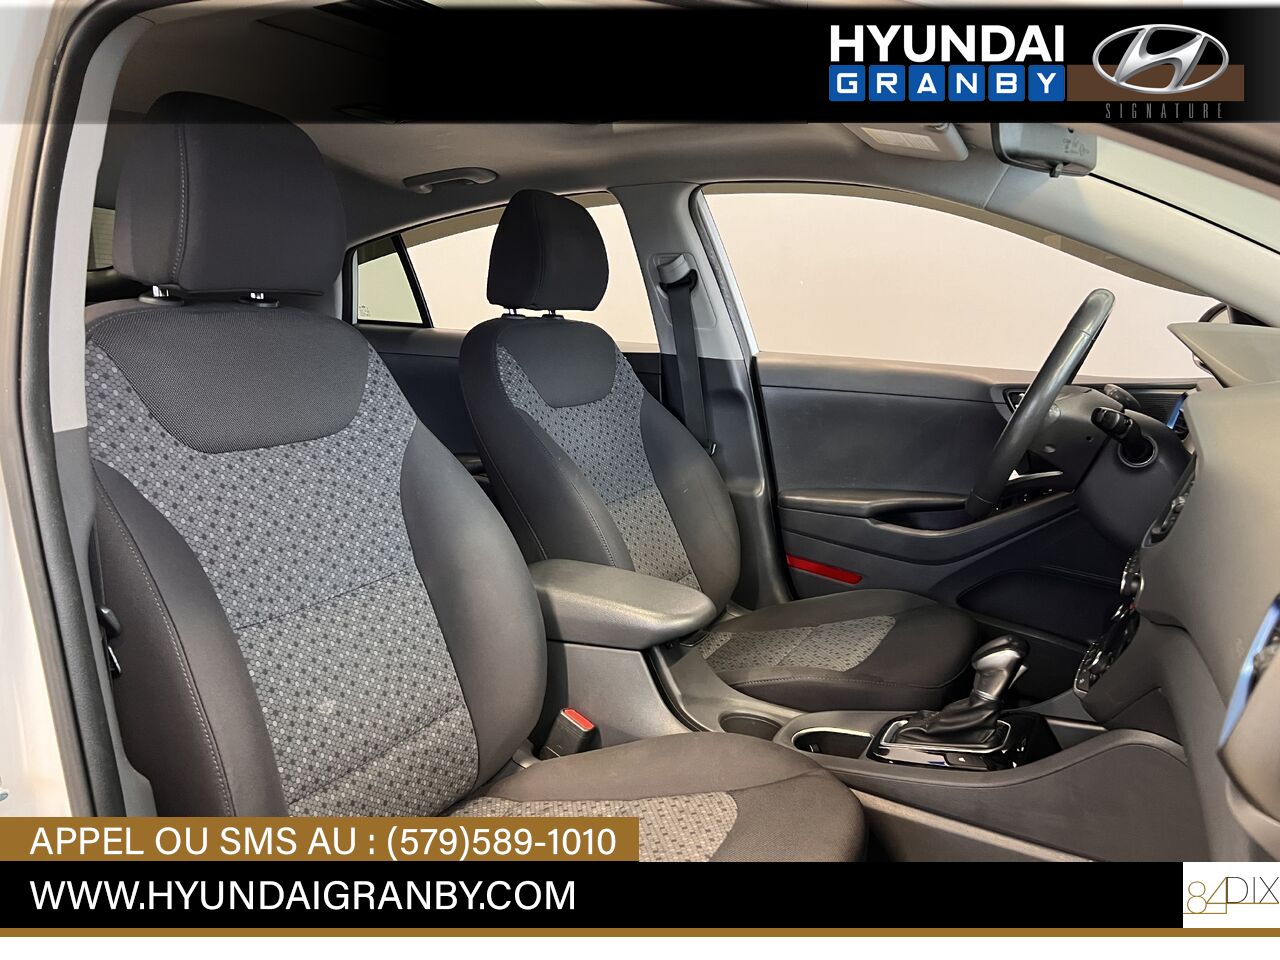 Hyundai Ioniq hybride 2017 Granby - photo #27